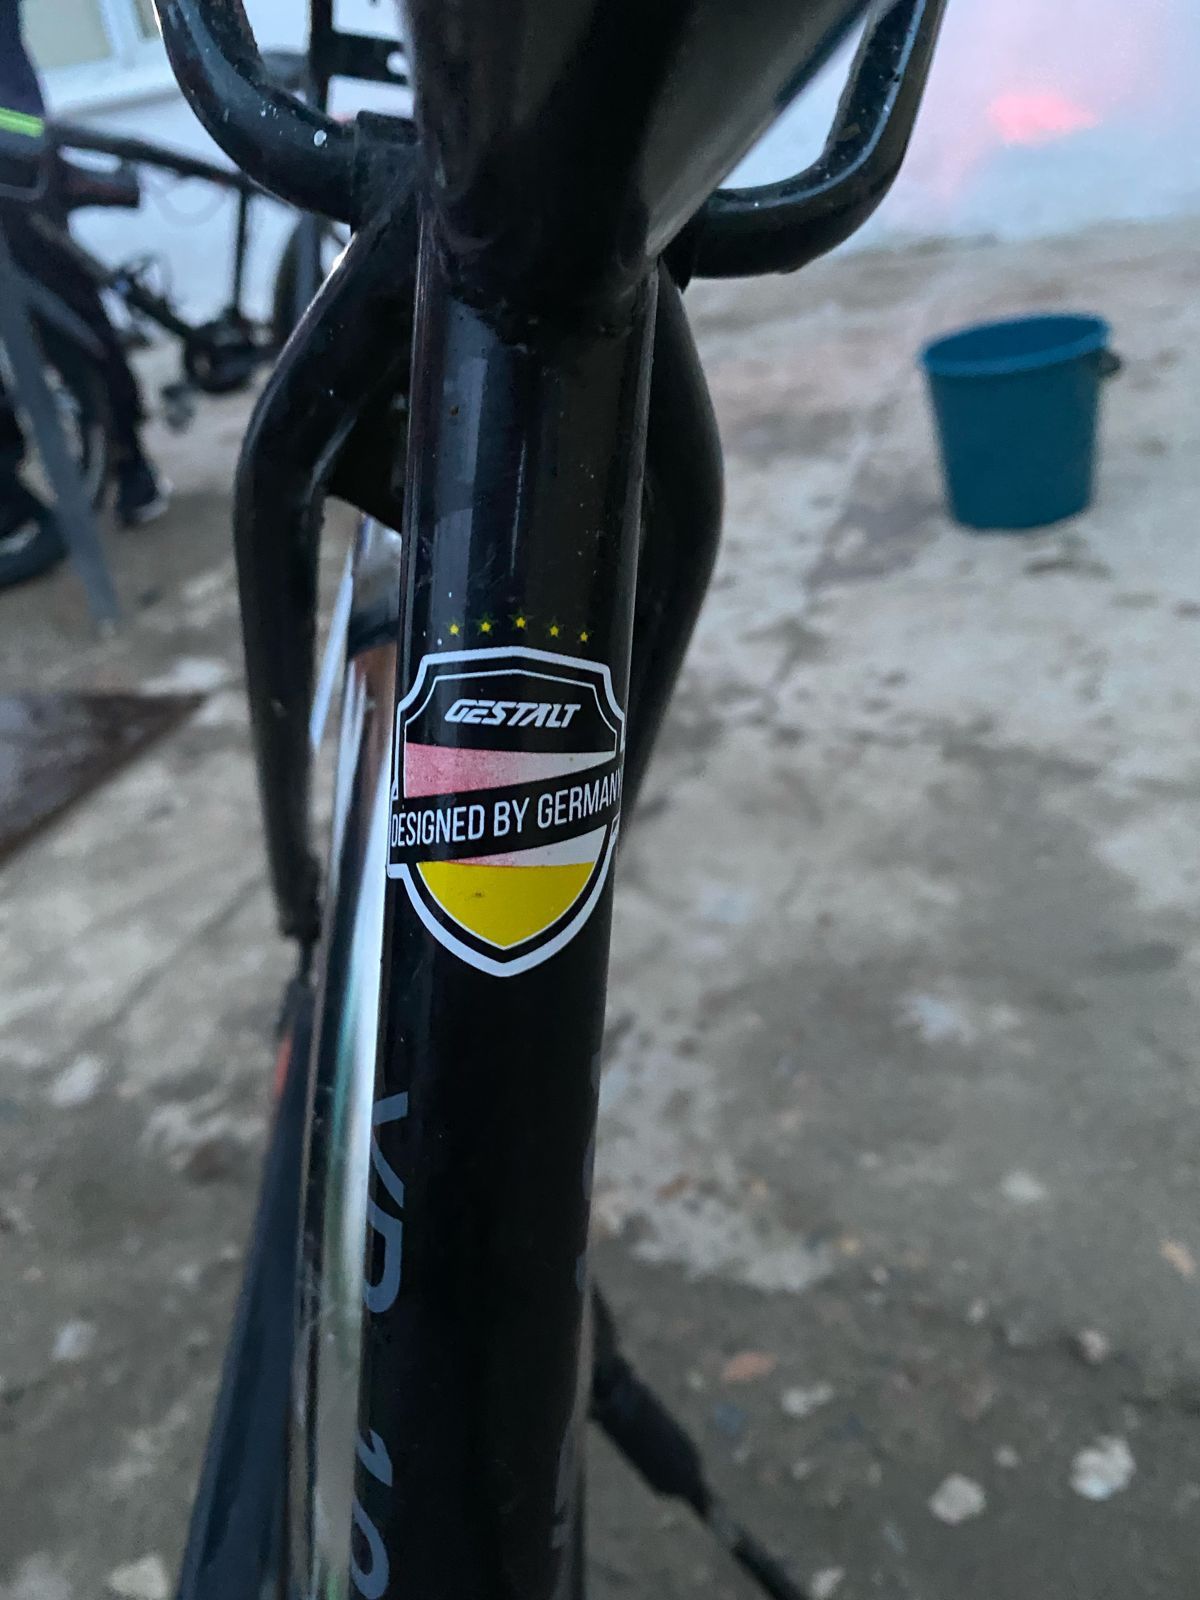 Велосипед Урал Германский